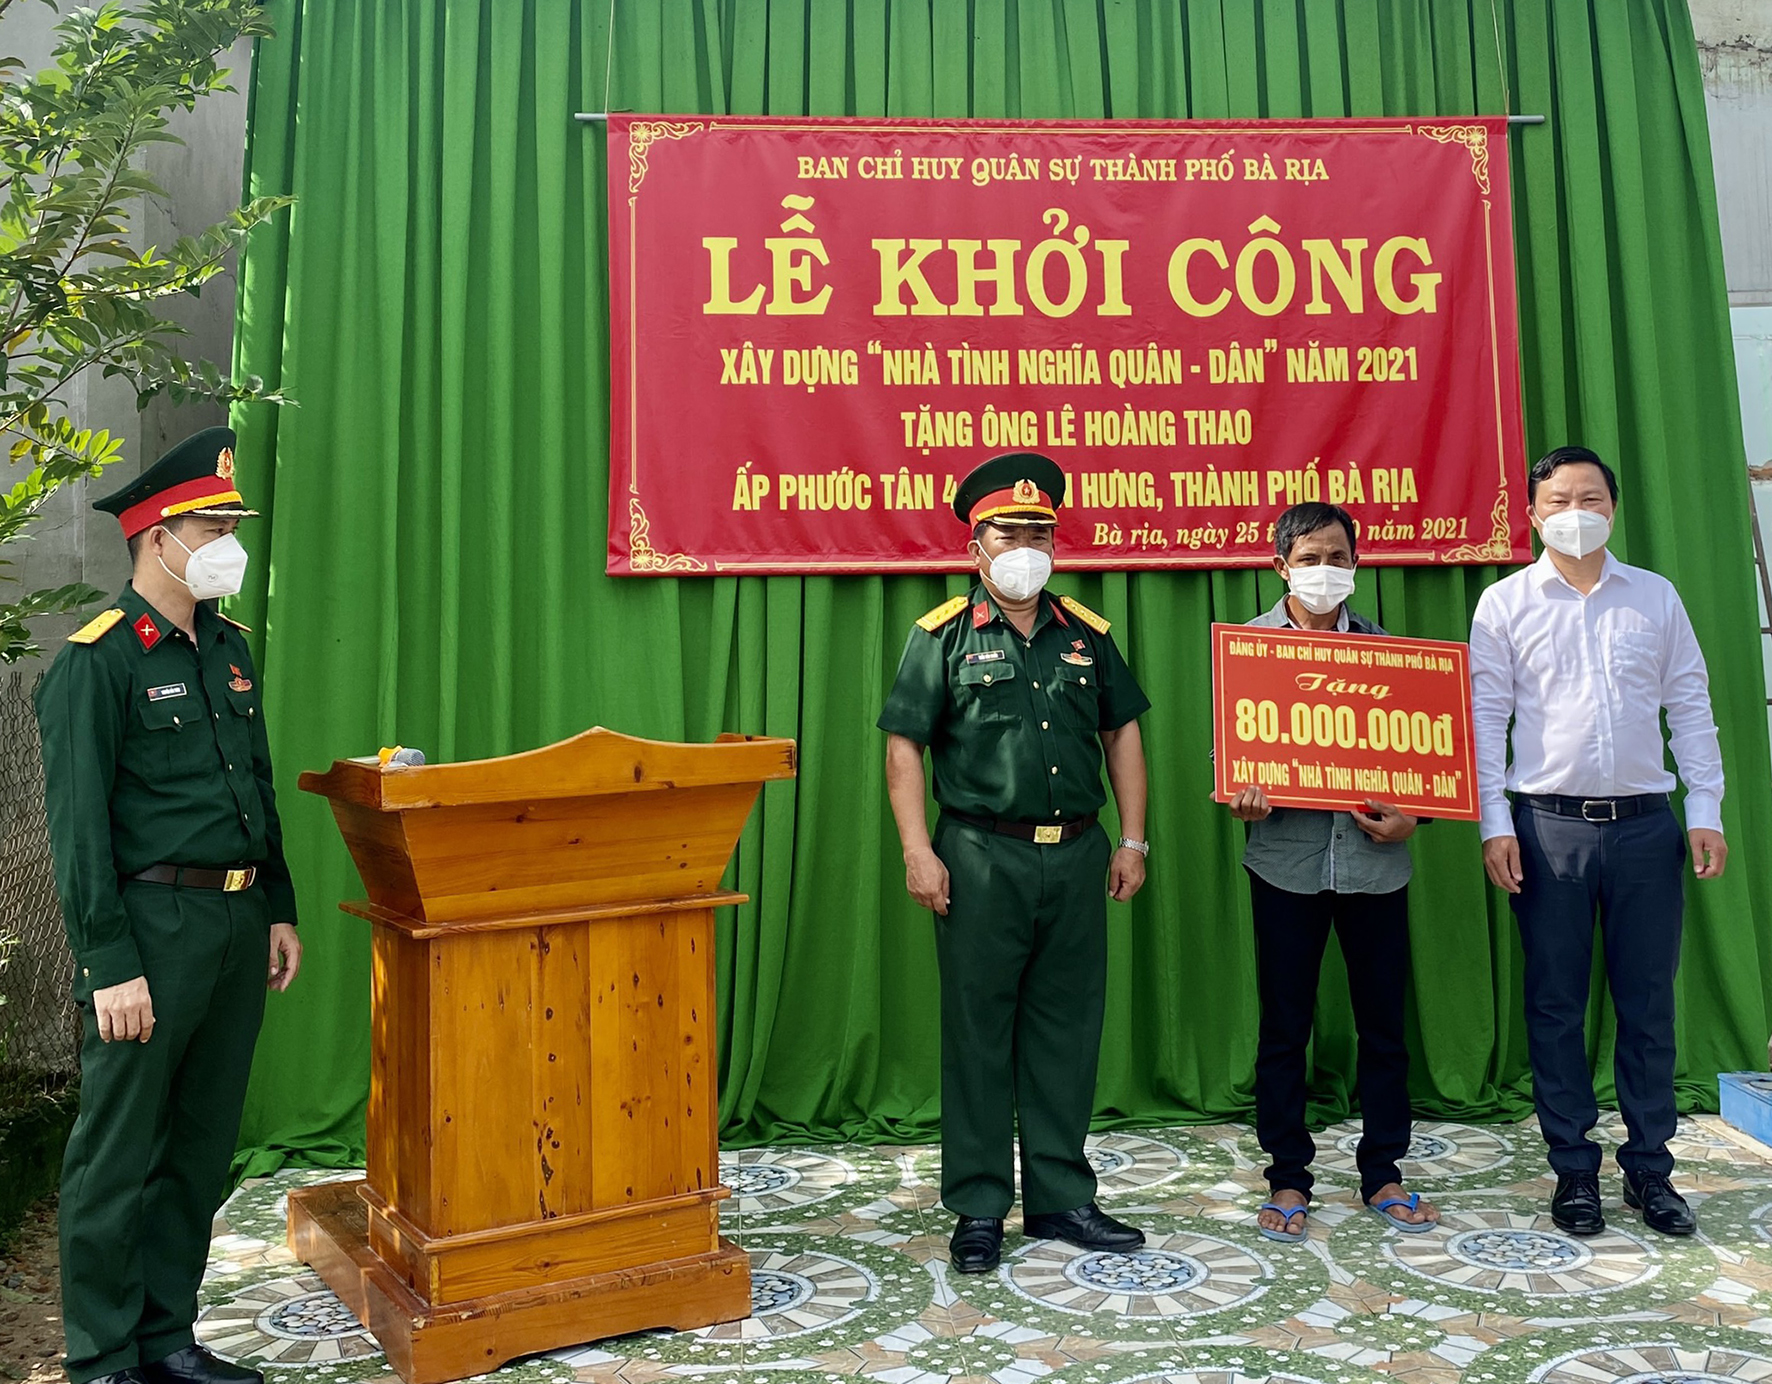 Đại diện Ban CHQS TP. Bà Rịa trao bảng tượng trưng hỗ trợ 80 triệu đồng xây dựng “Nhà tình nghĩa quân - dân” cho gia đình ông Lê Hoàng Thao.